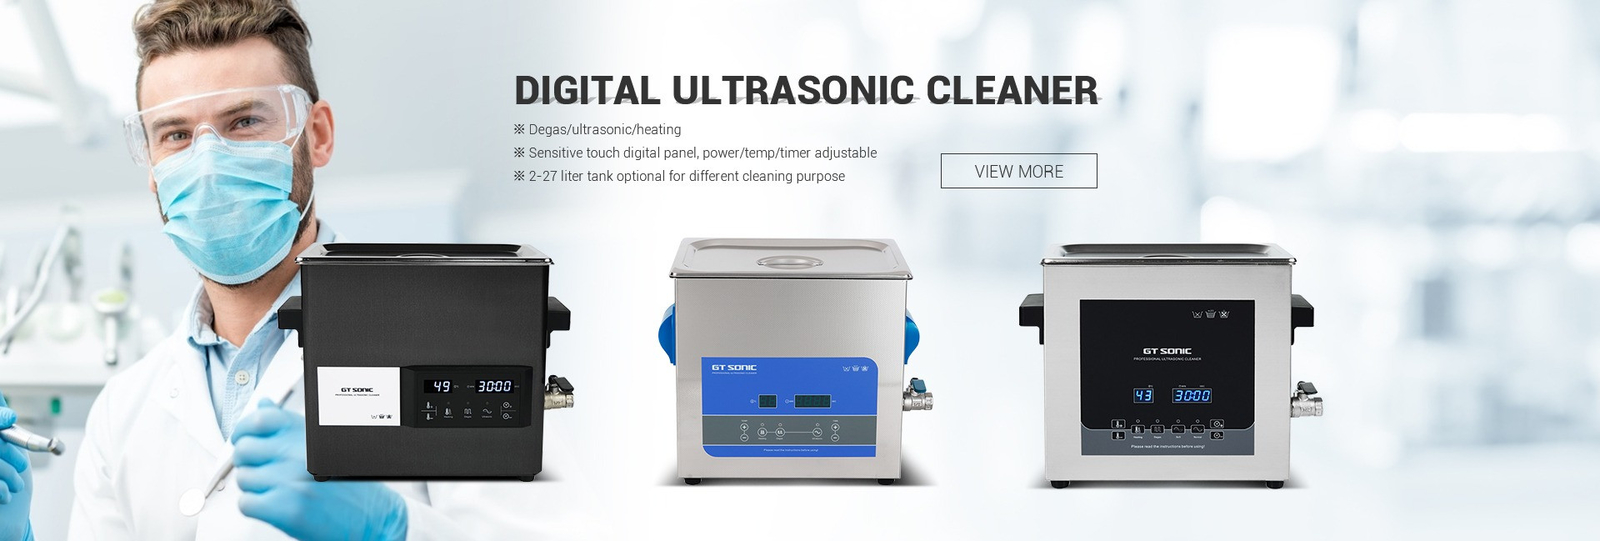 Porcellana il la cosa migliore Digital Ultrasonic Cleaner sulle vendite